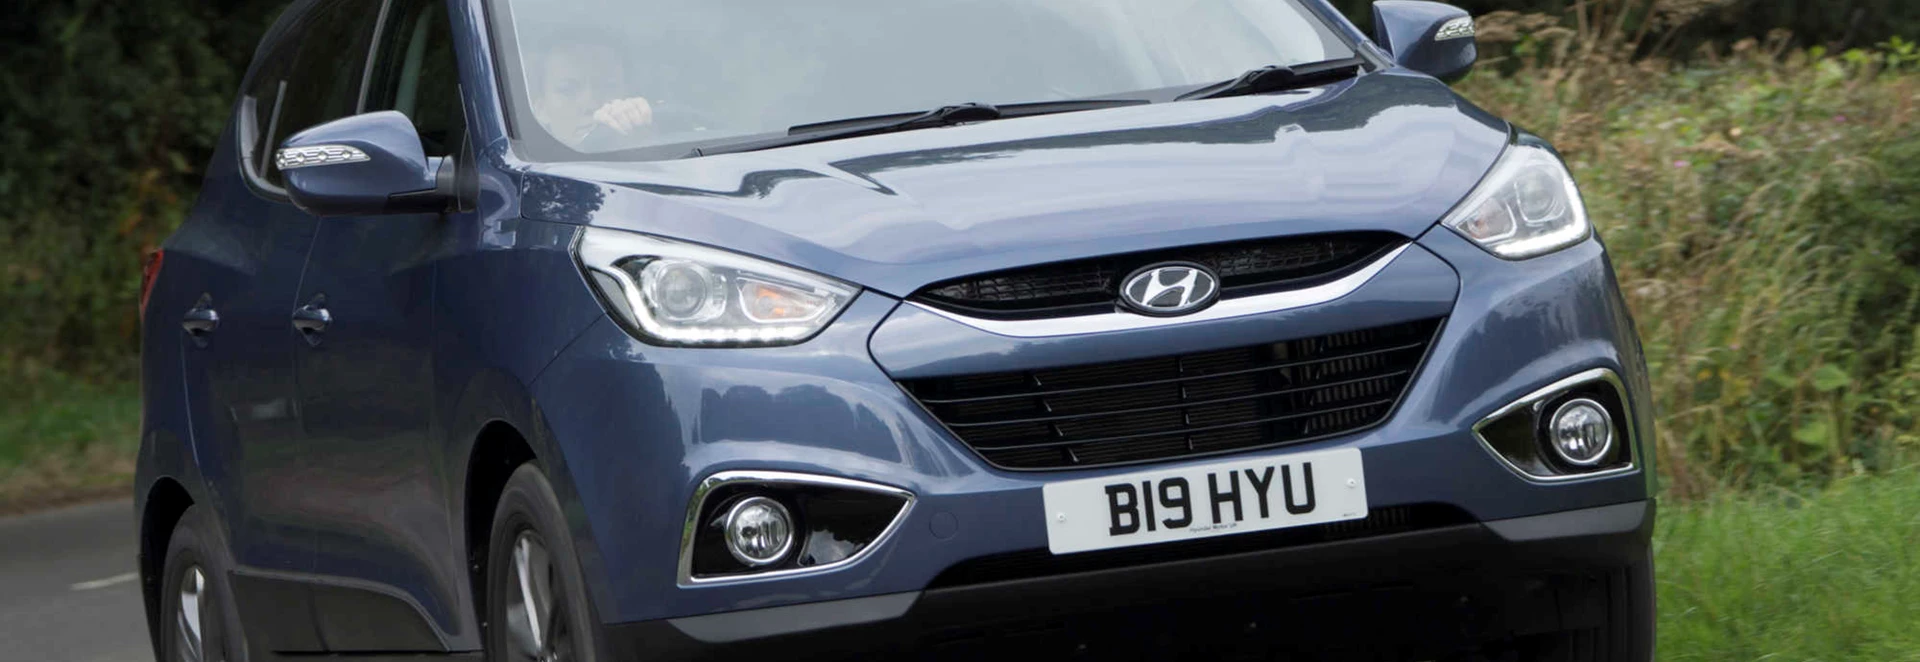 Hyundai ix35 crossover review 